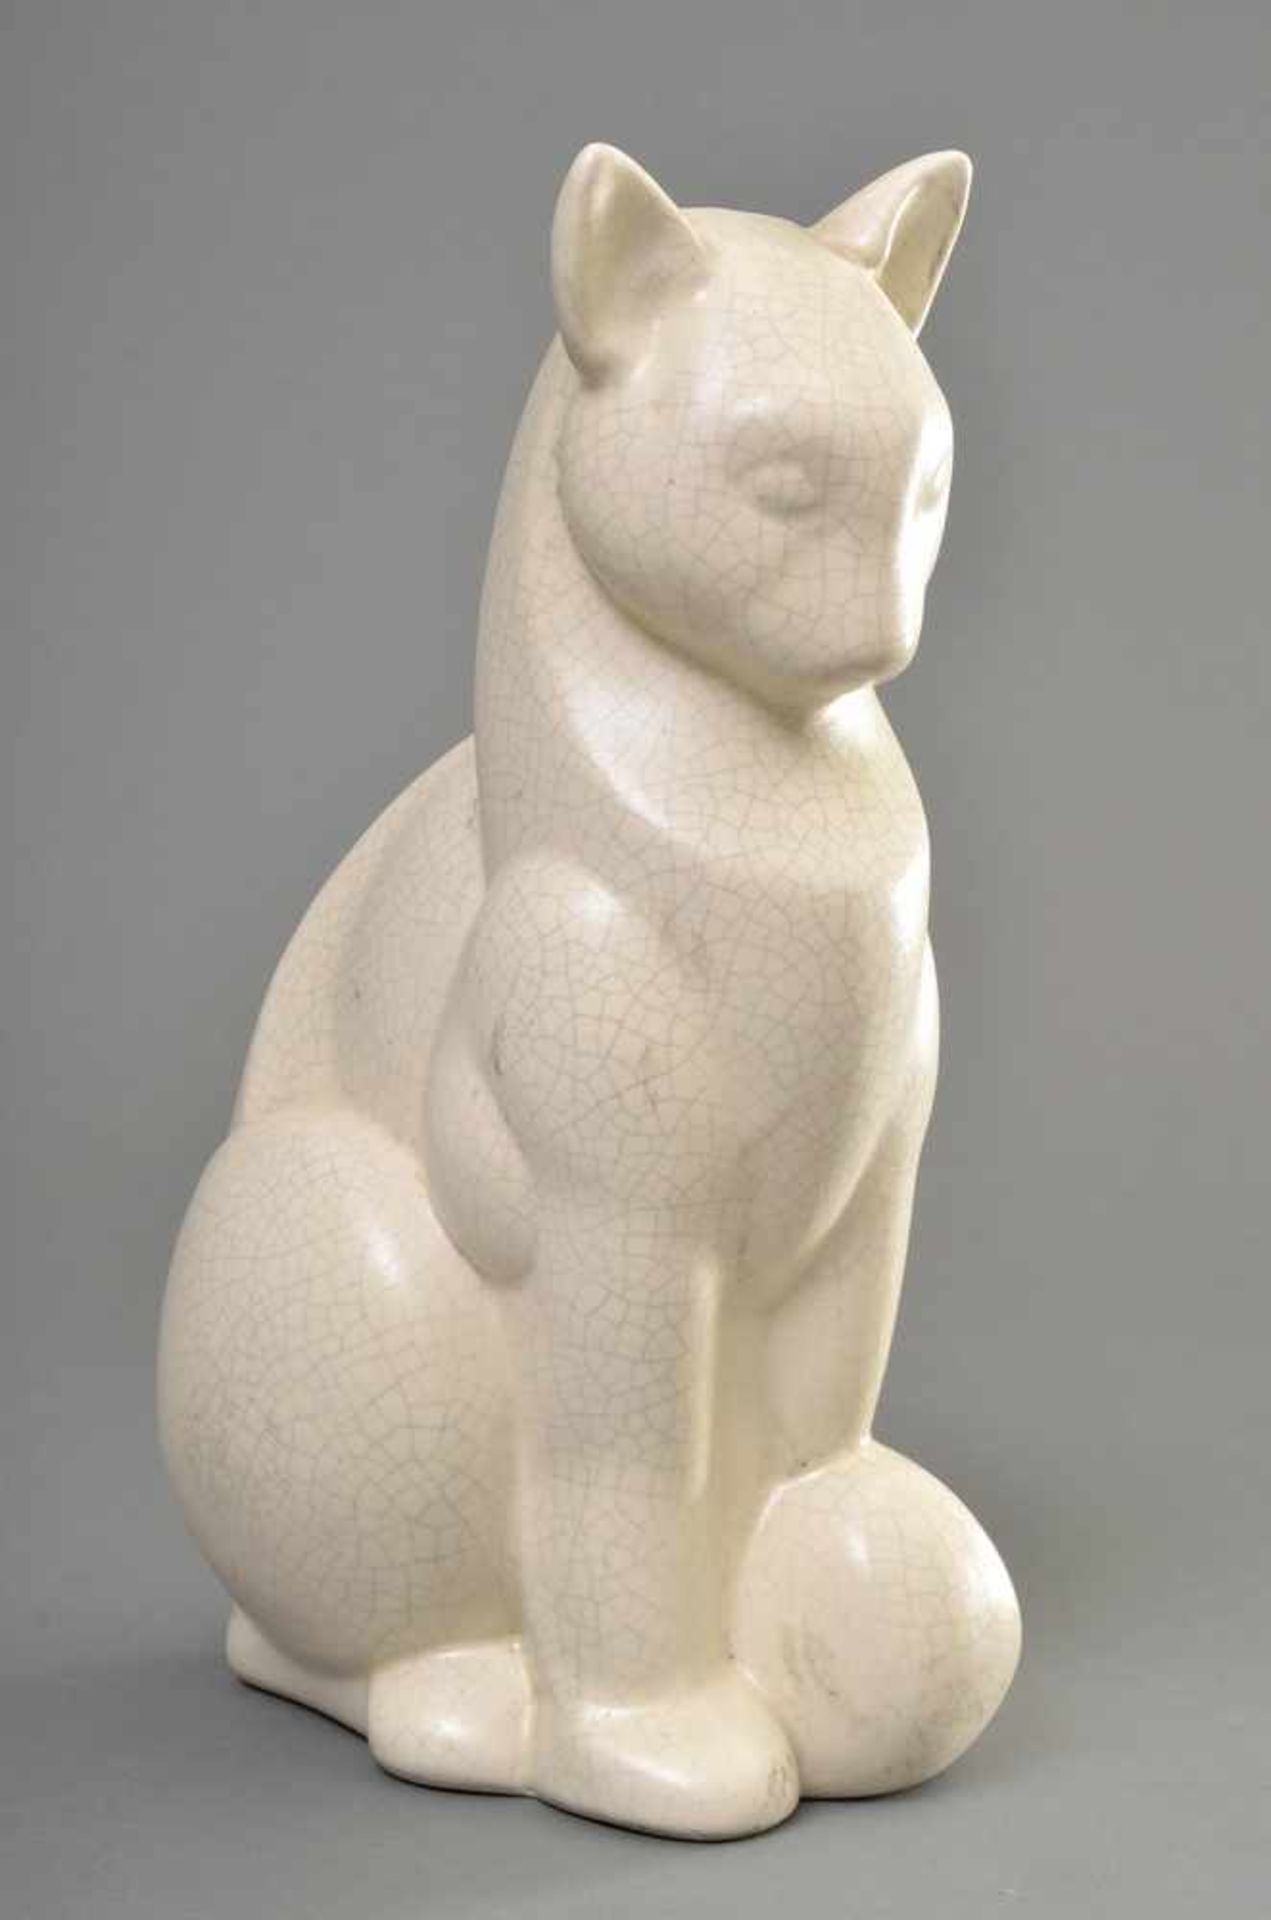 Art Deco Keramik Figur "Sitzende Katze", helle, matte Glasur mit feinem Craquelé, H. 28,5cm - Bild 2 aus 4